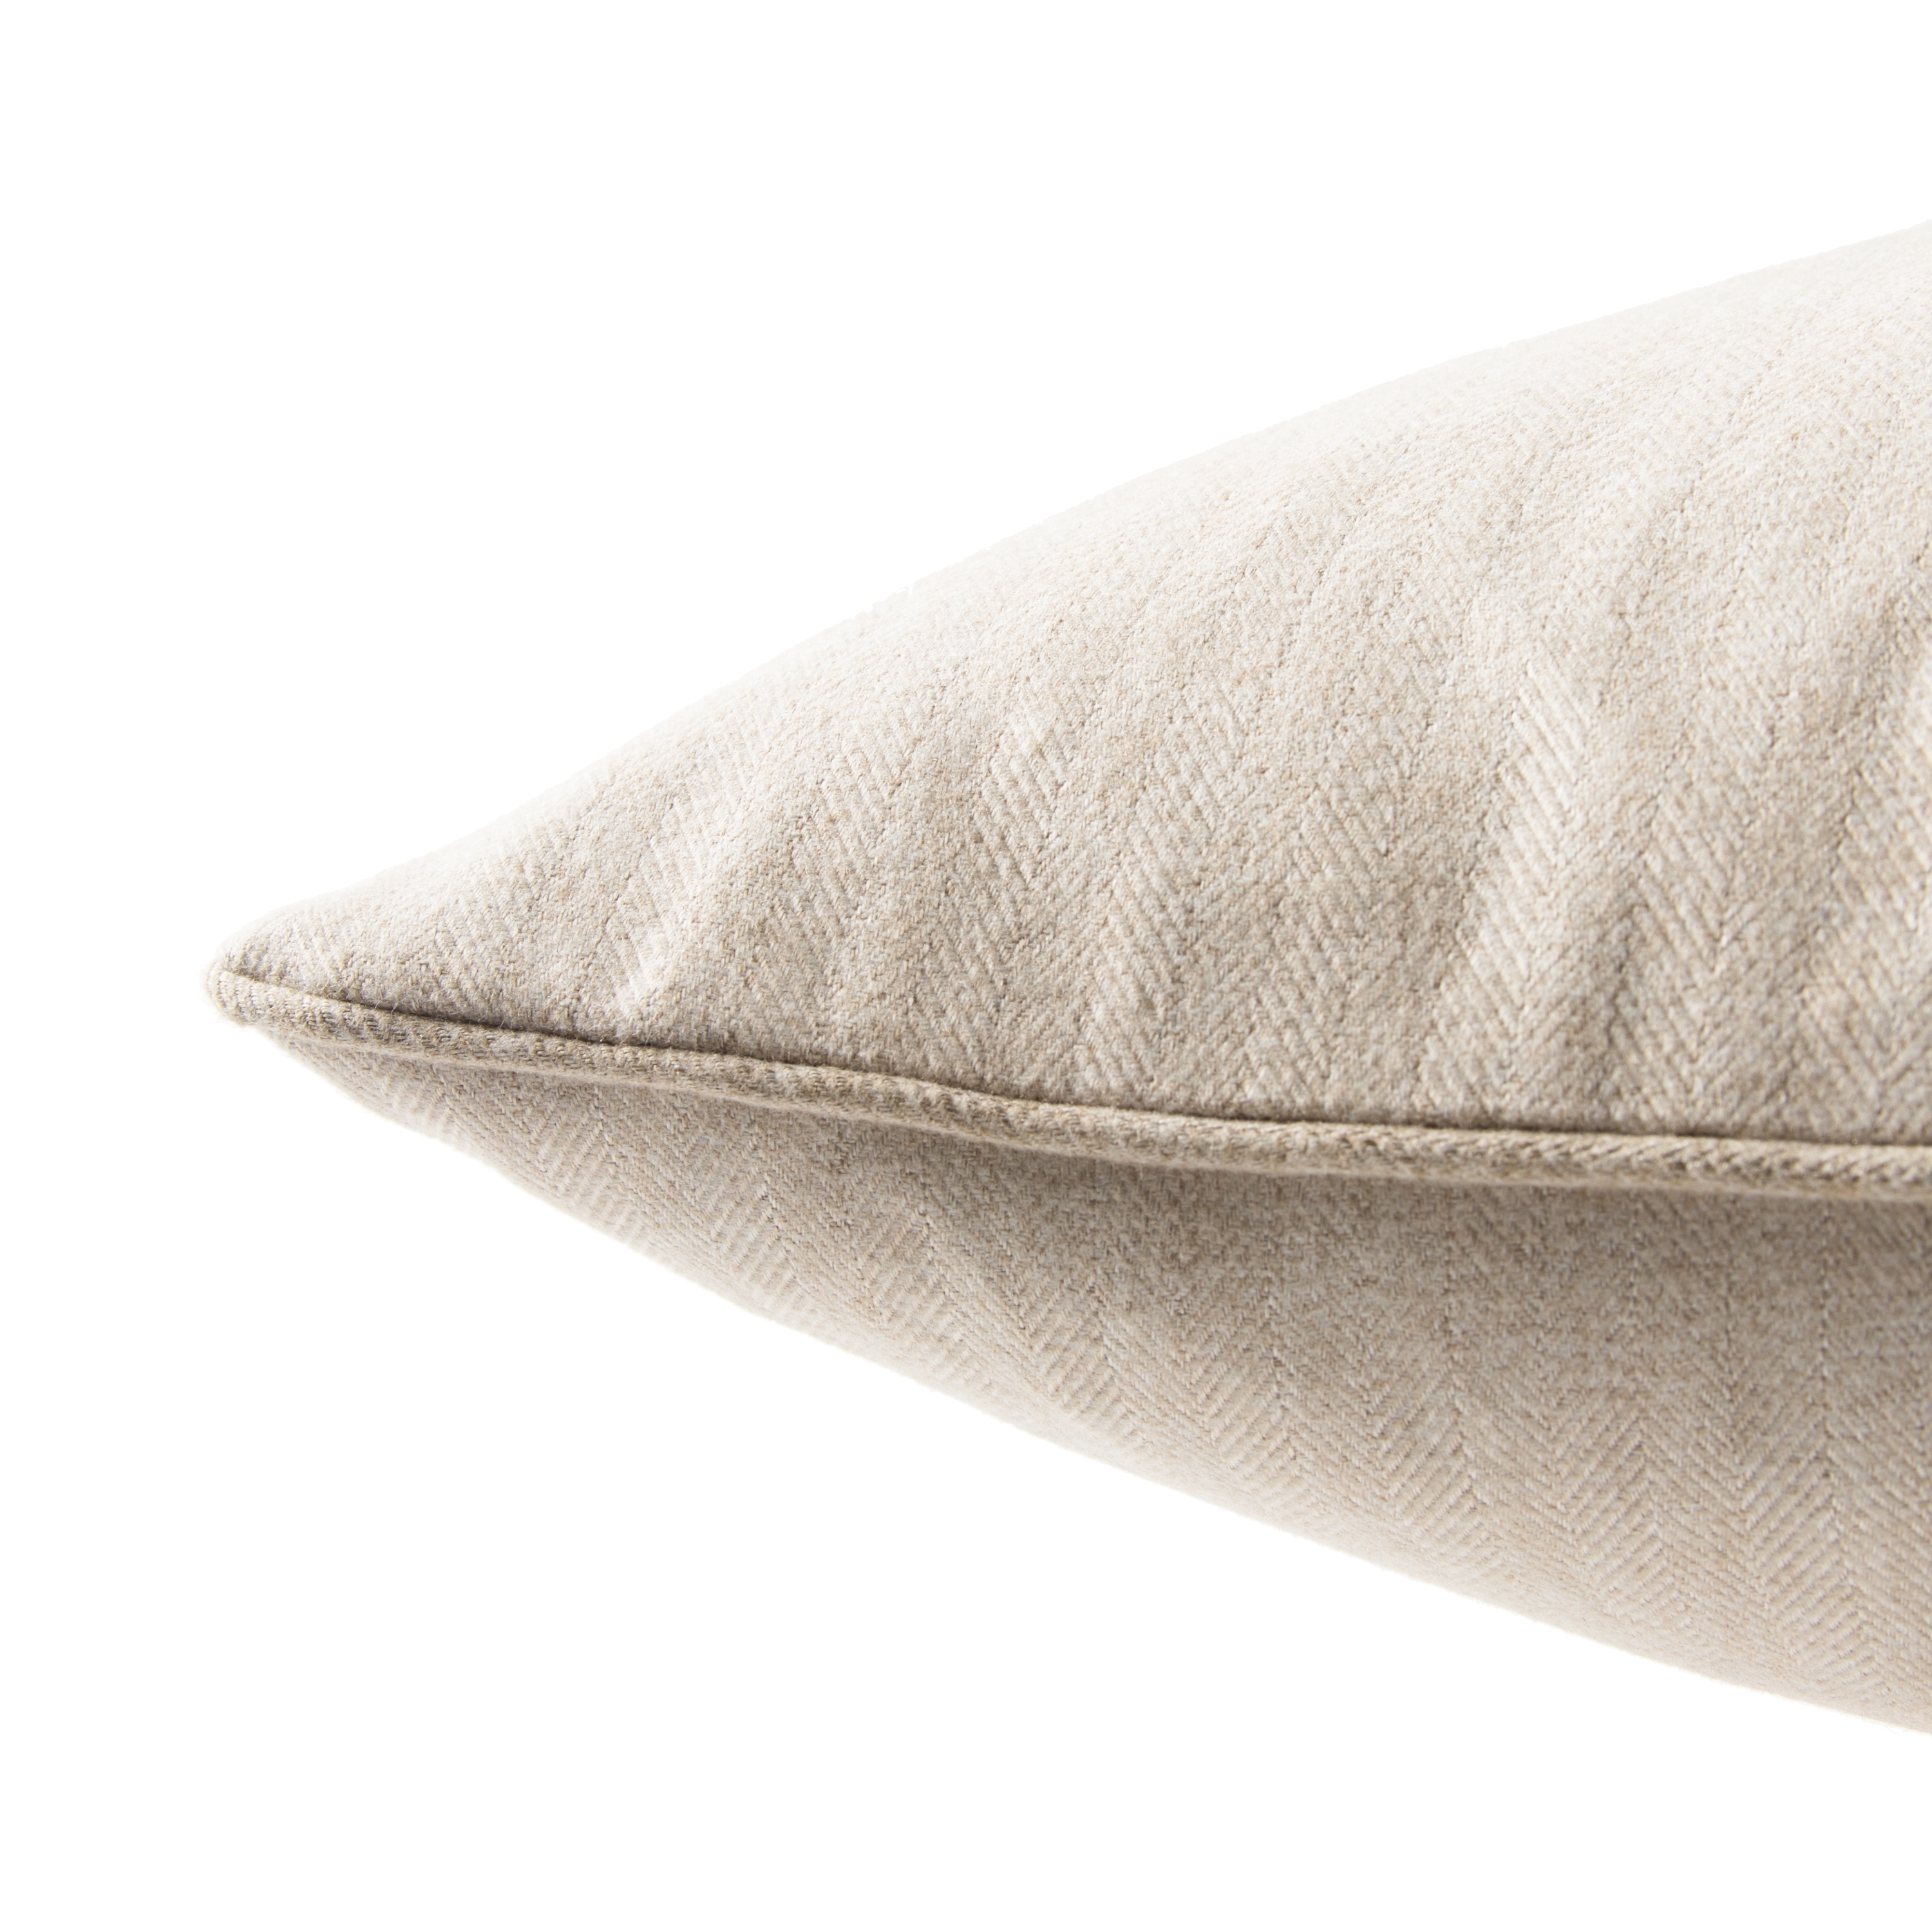 Design (US) Cream 22"X22" Pillow - Image 2